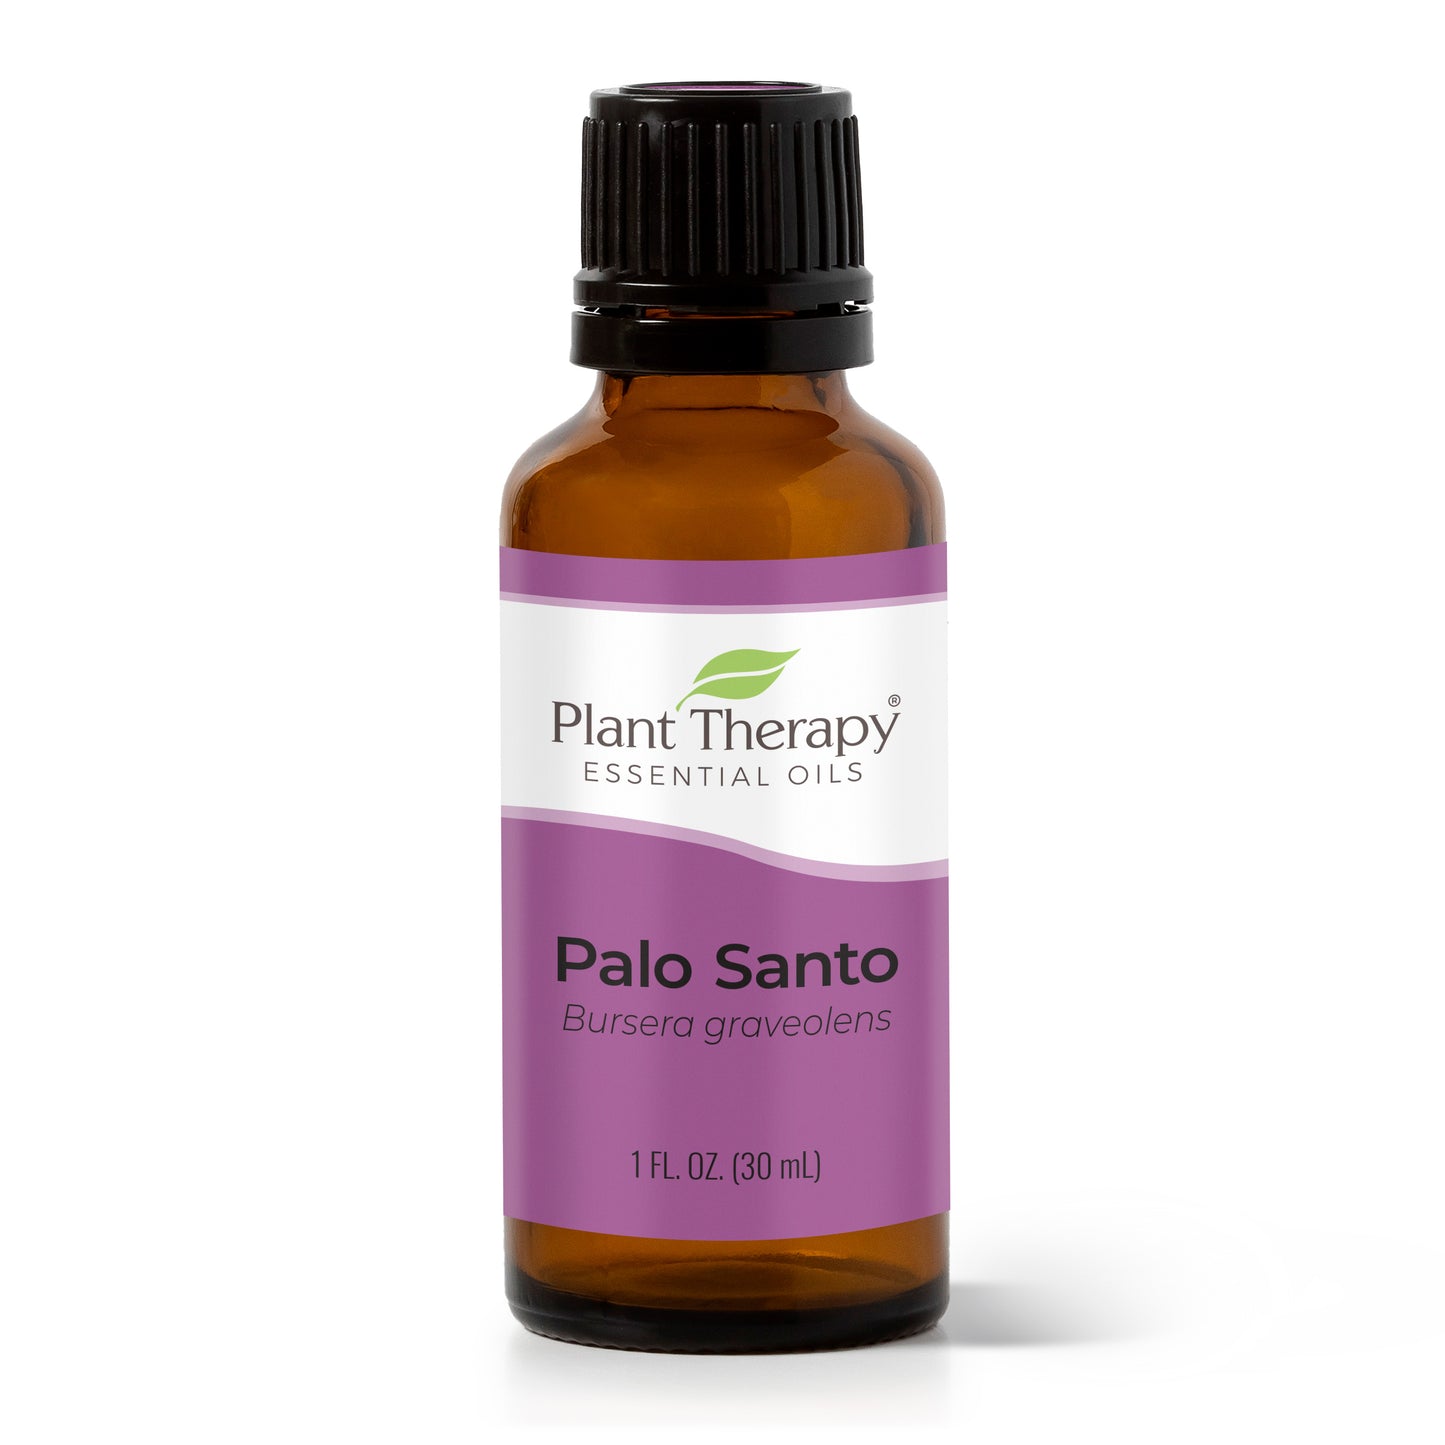 Plant Therapy Palo Santo Essential Oil 10 ml (1/3 oz) 100% Pure, Undiluted, Therapeutic Grade